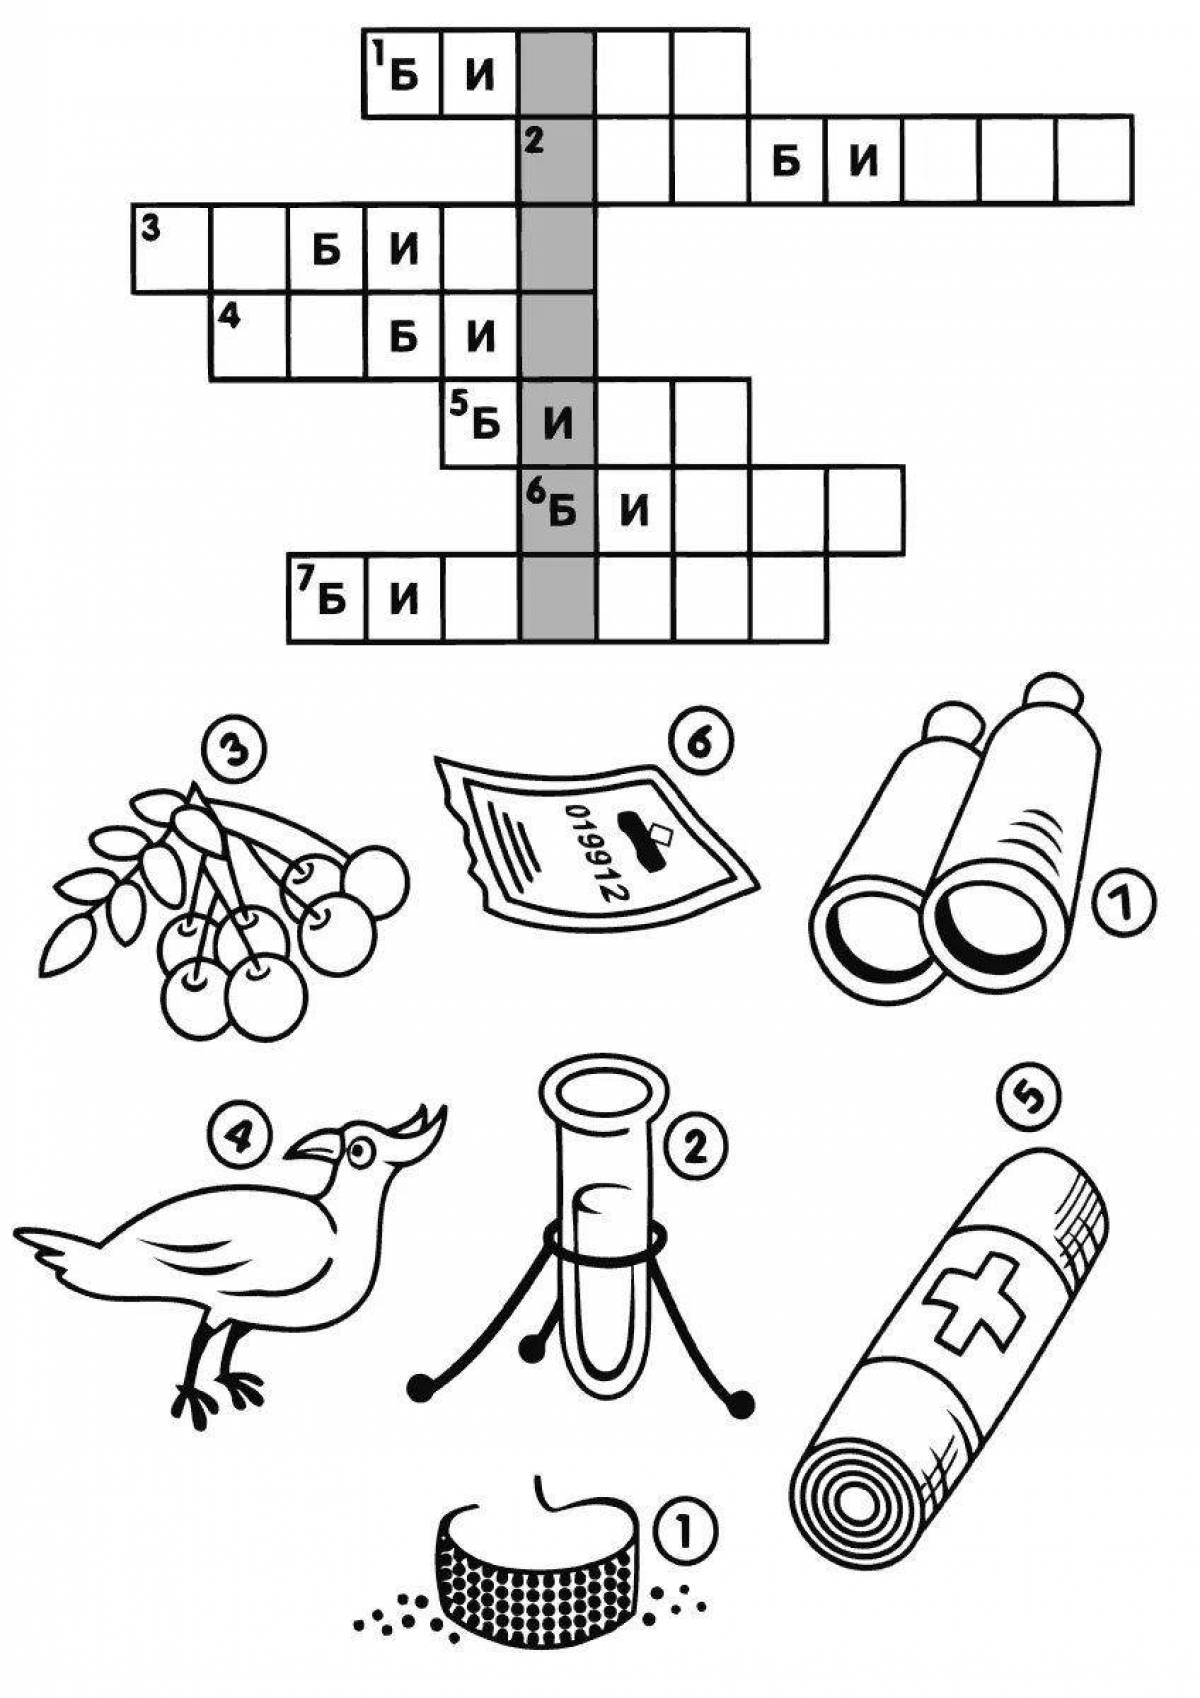 Crossword #24